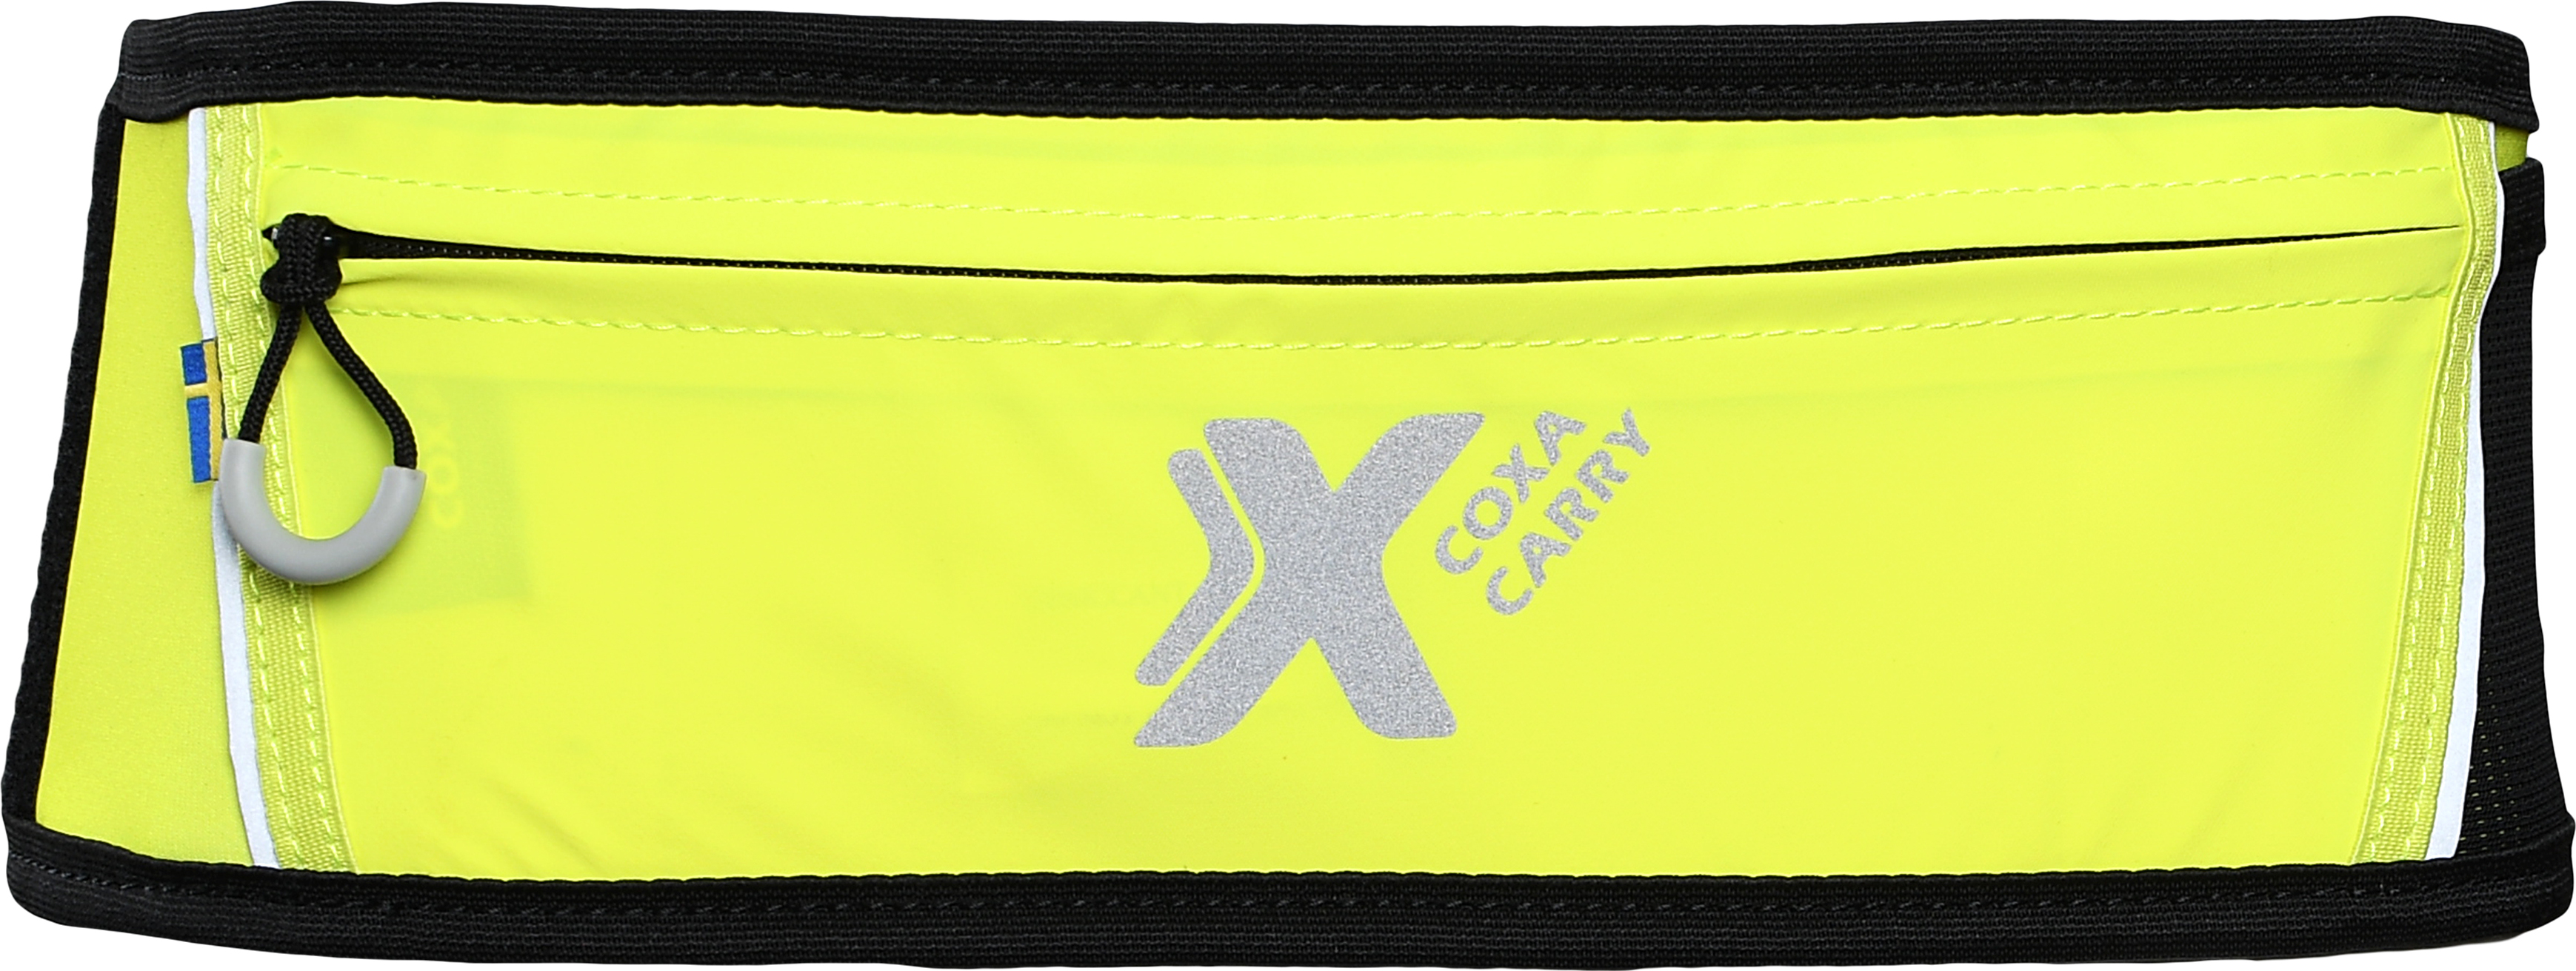 Coxa Carry Coxa Running Belt Yellow OneSize, Yellow